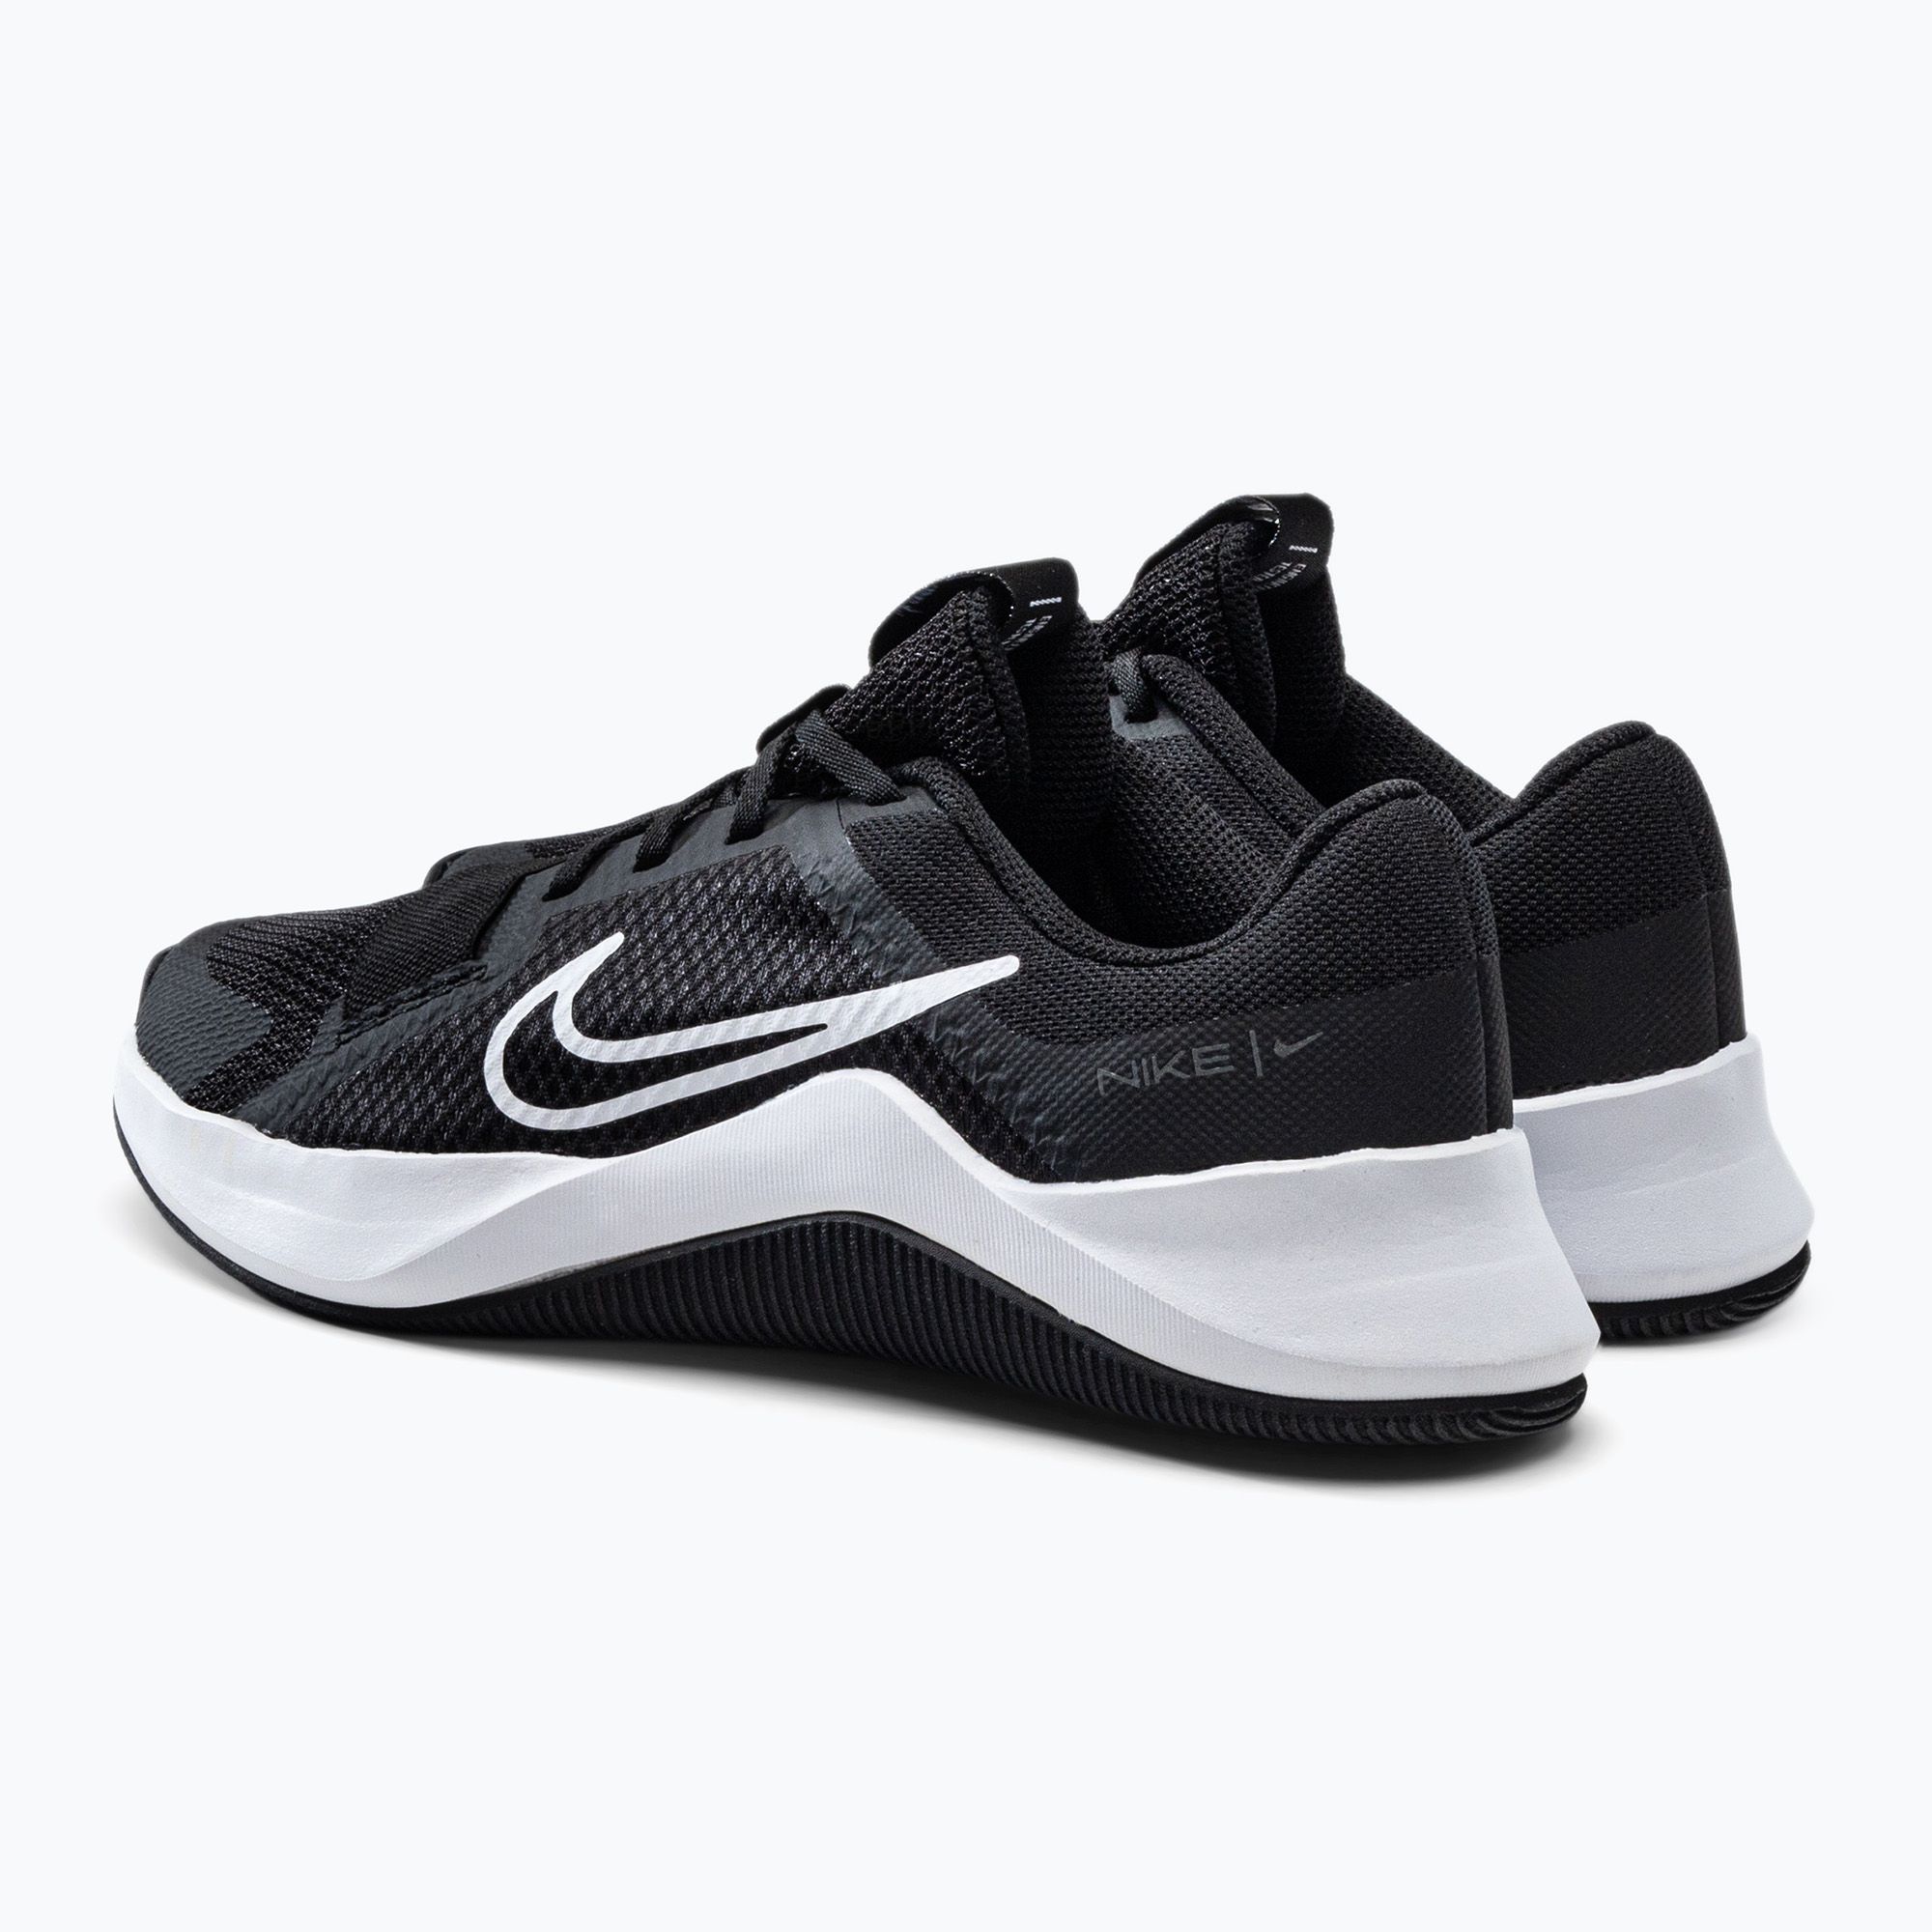 Buty treningowe damskie Nike Mc Trainer 2 black/white/iron grey zdjęcie nr 3